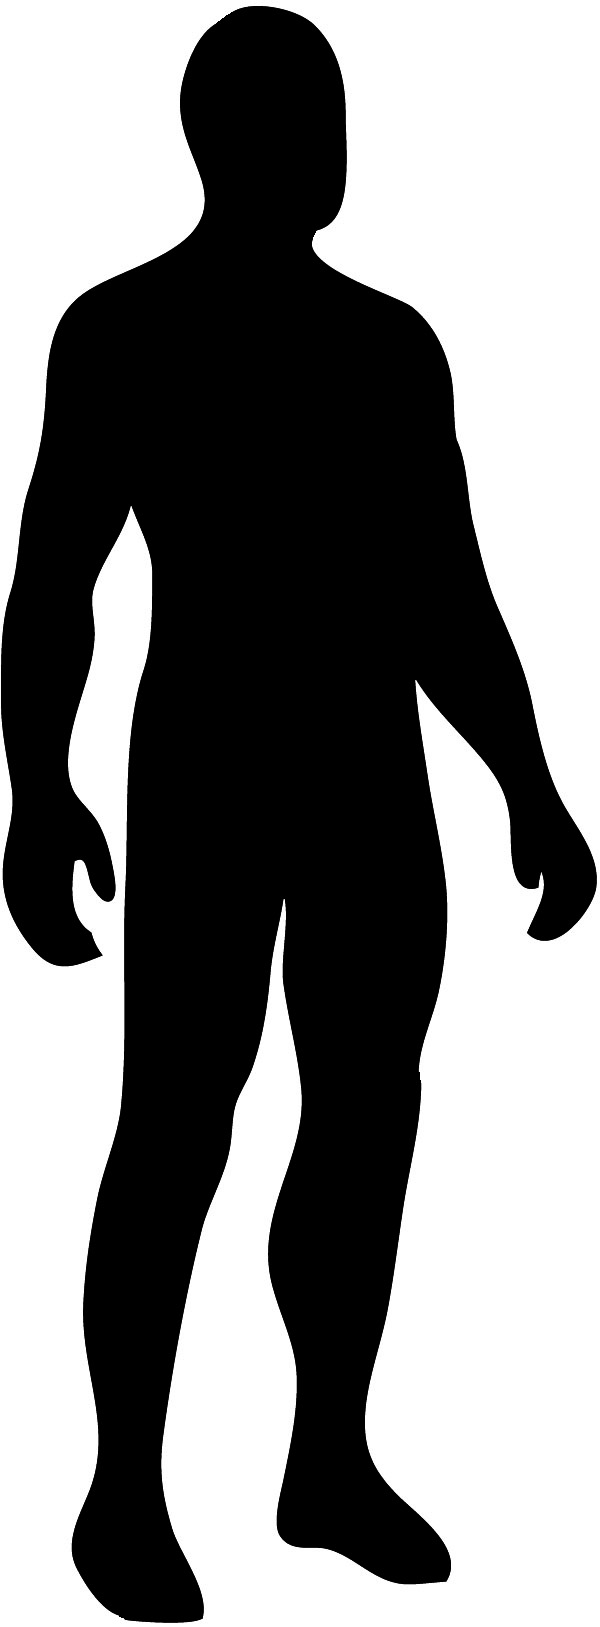 male body silhouette